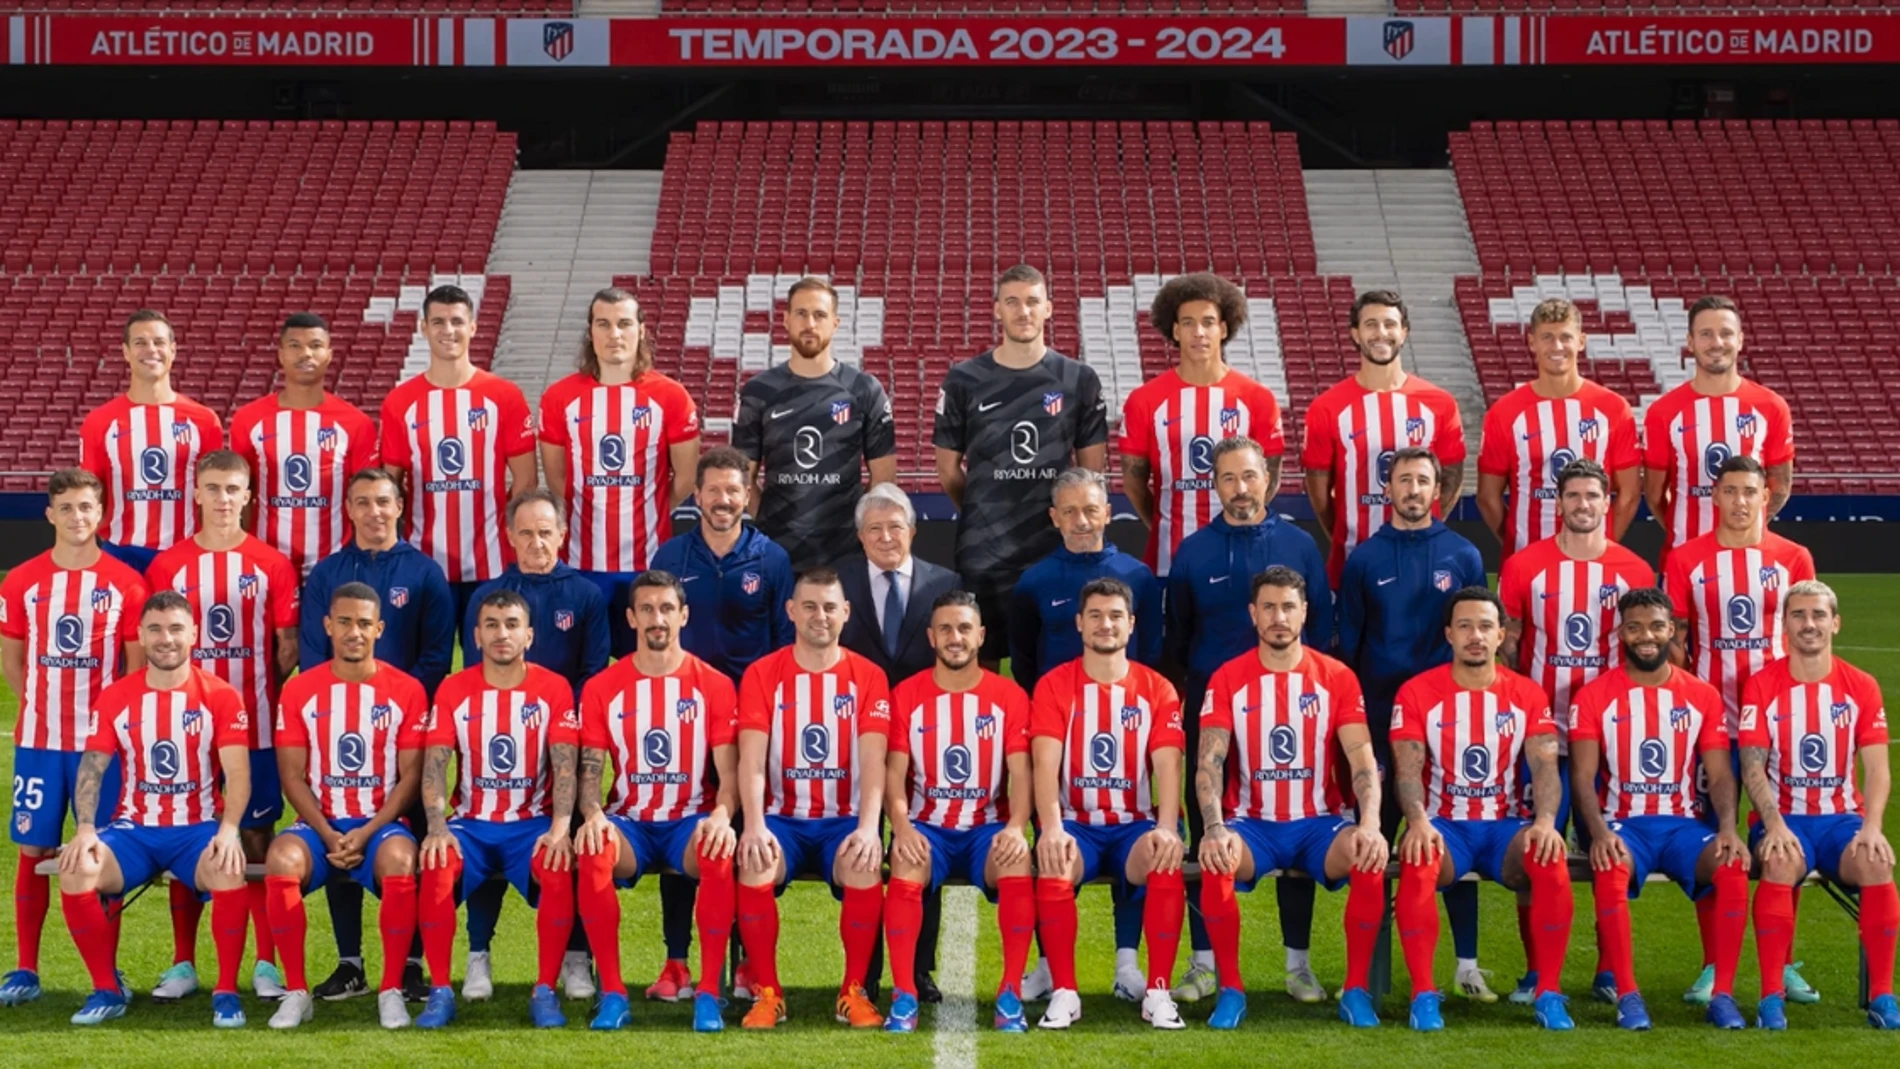 Dos aficionados posan con los jugadores del Atlético de Madrid 23-24 en la foto oficial